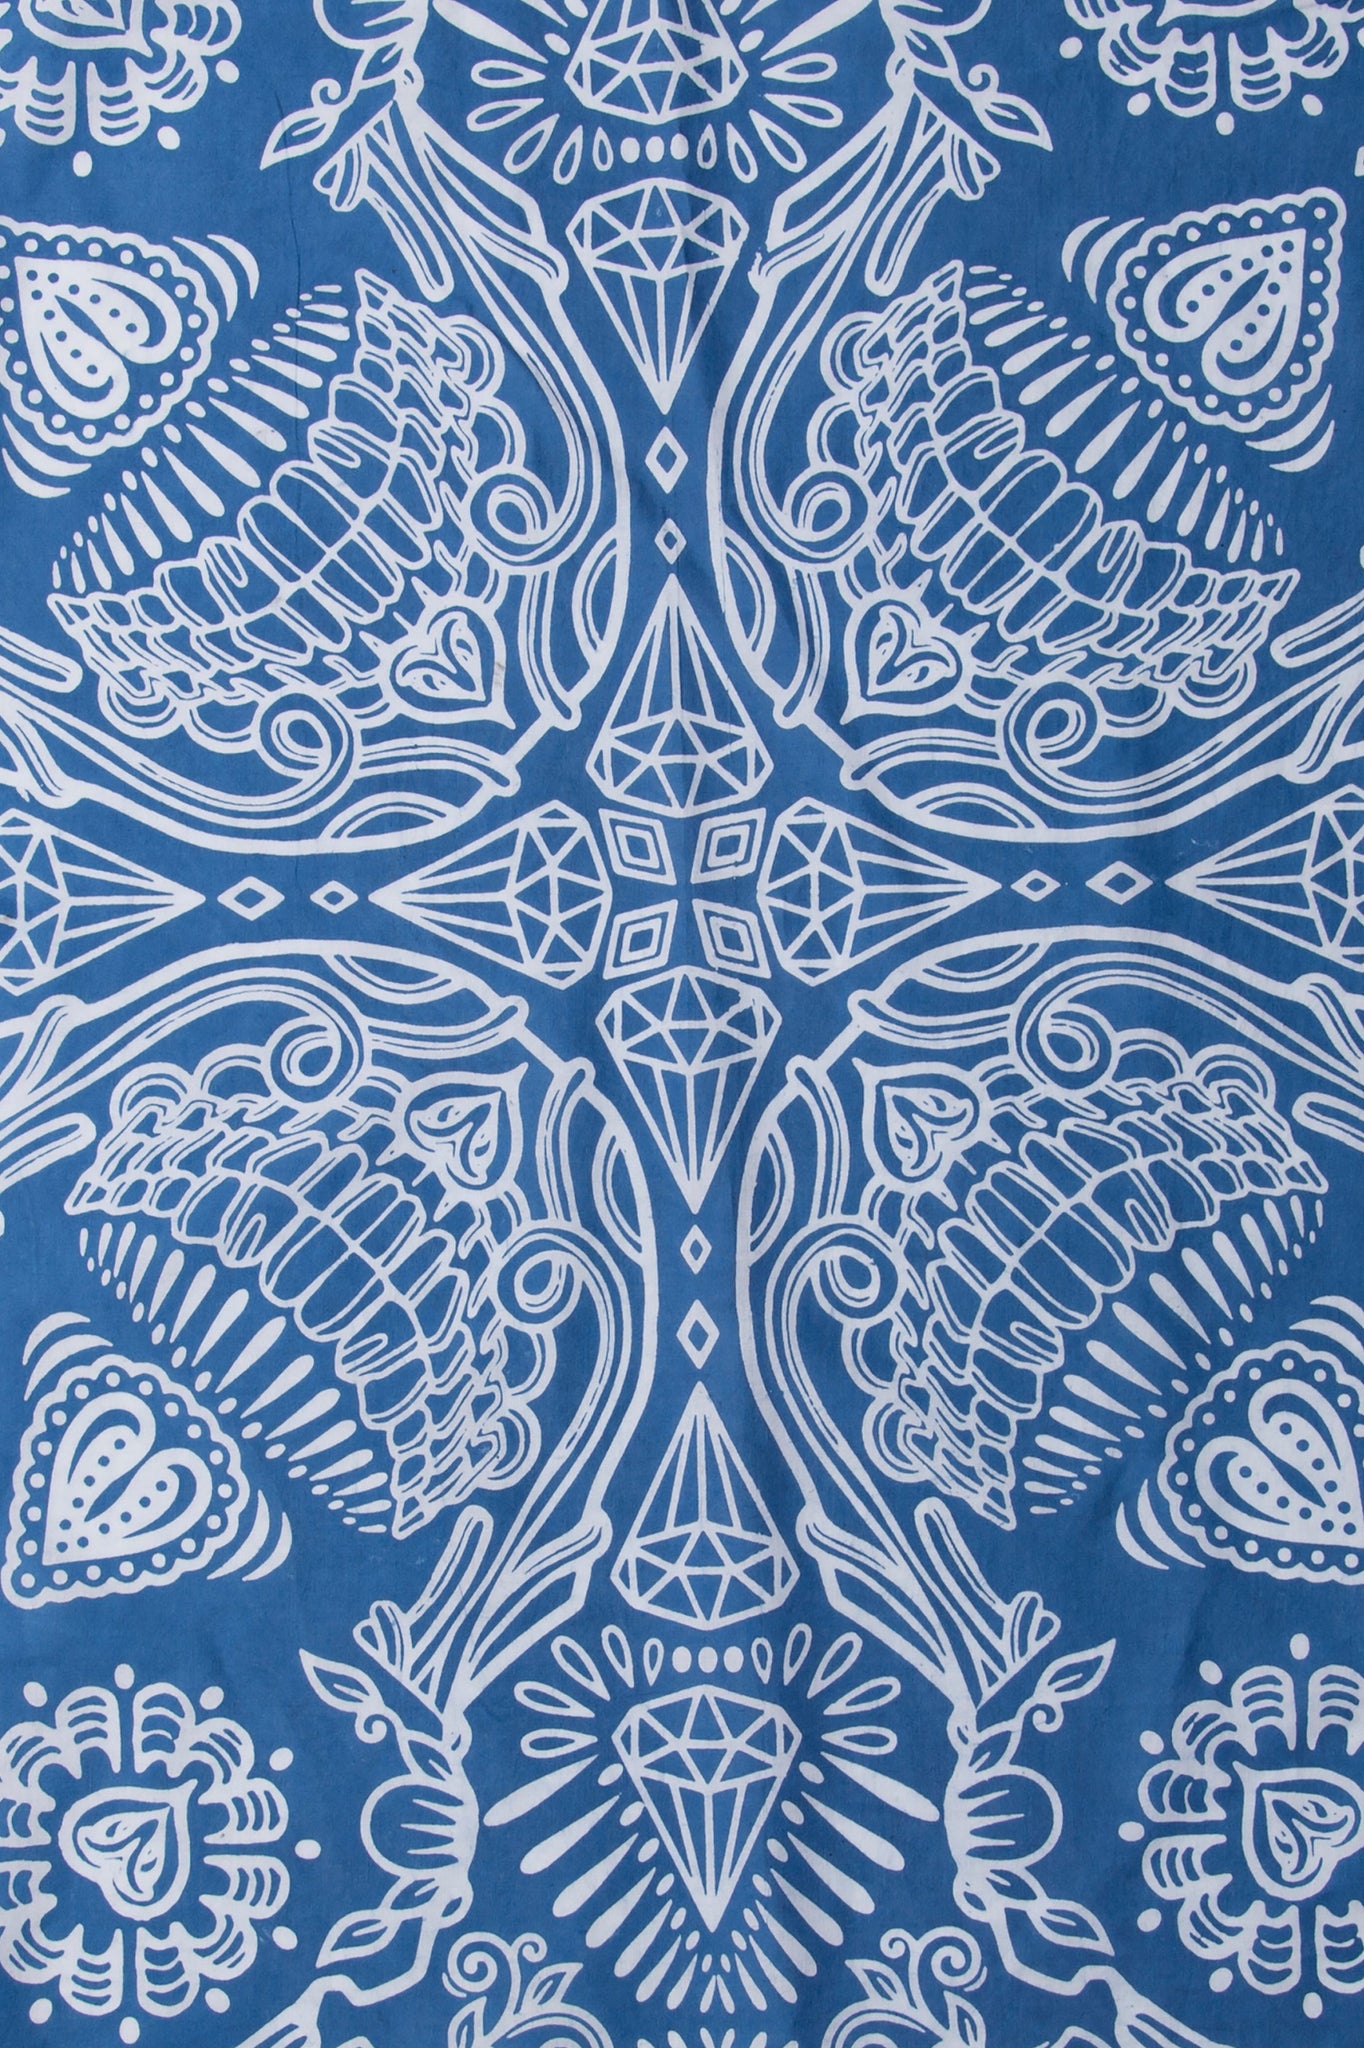 SKULL BANDANA - batik screen print